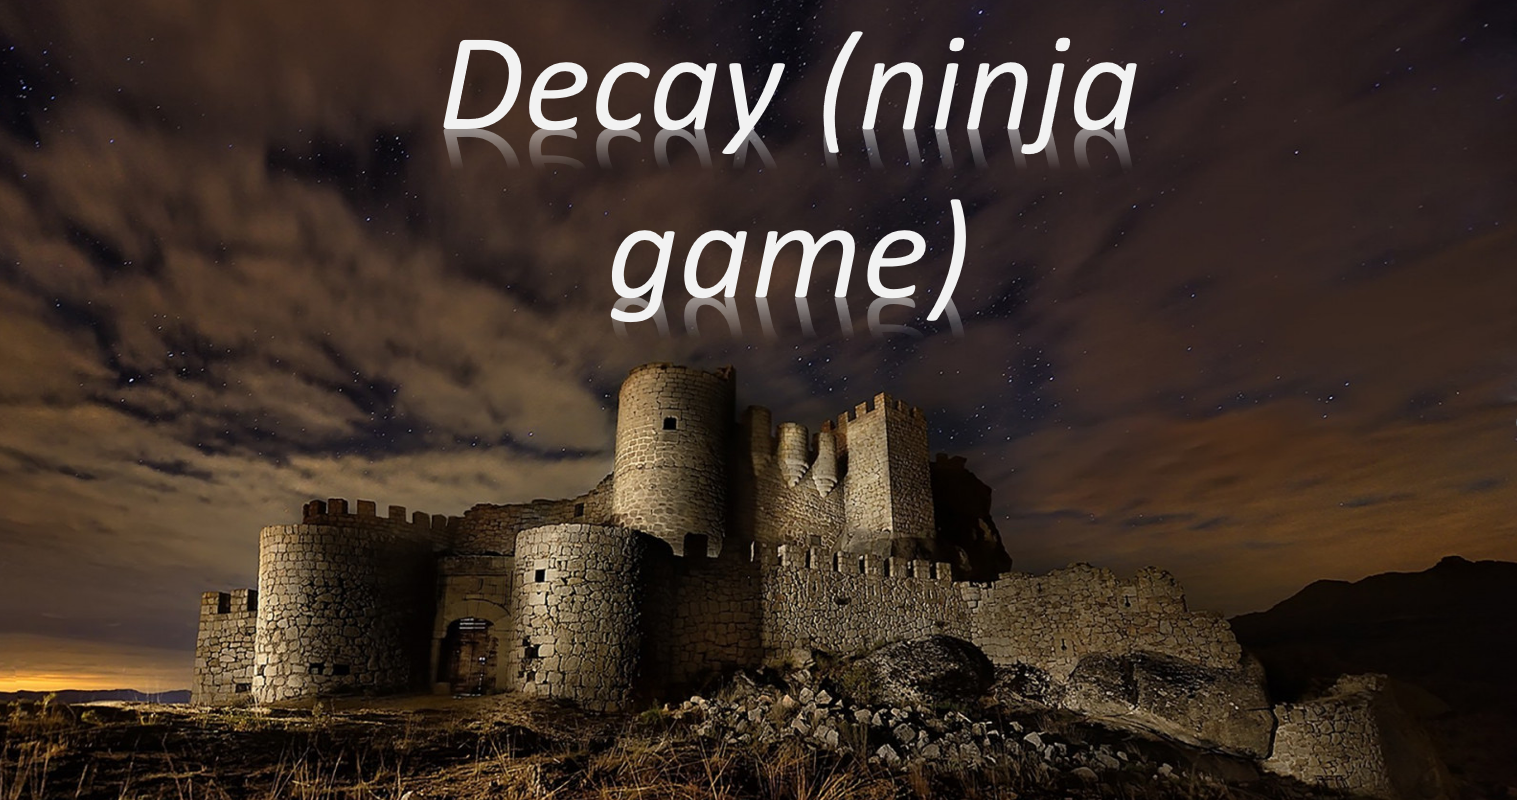 Decay (ninja game)